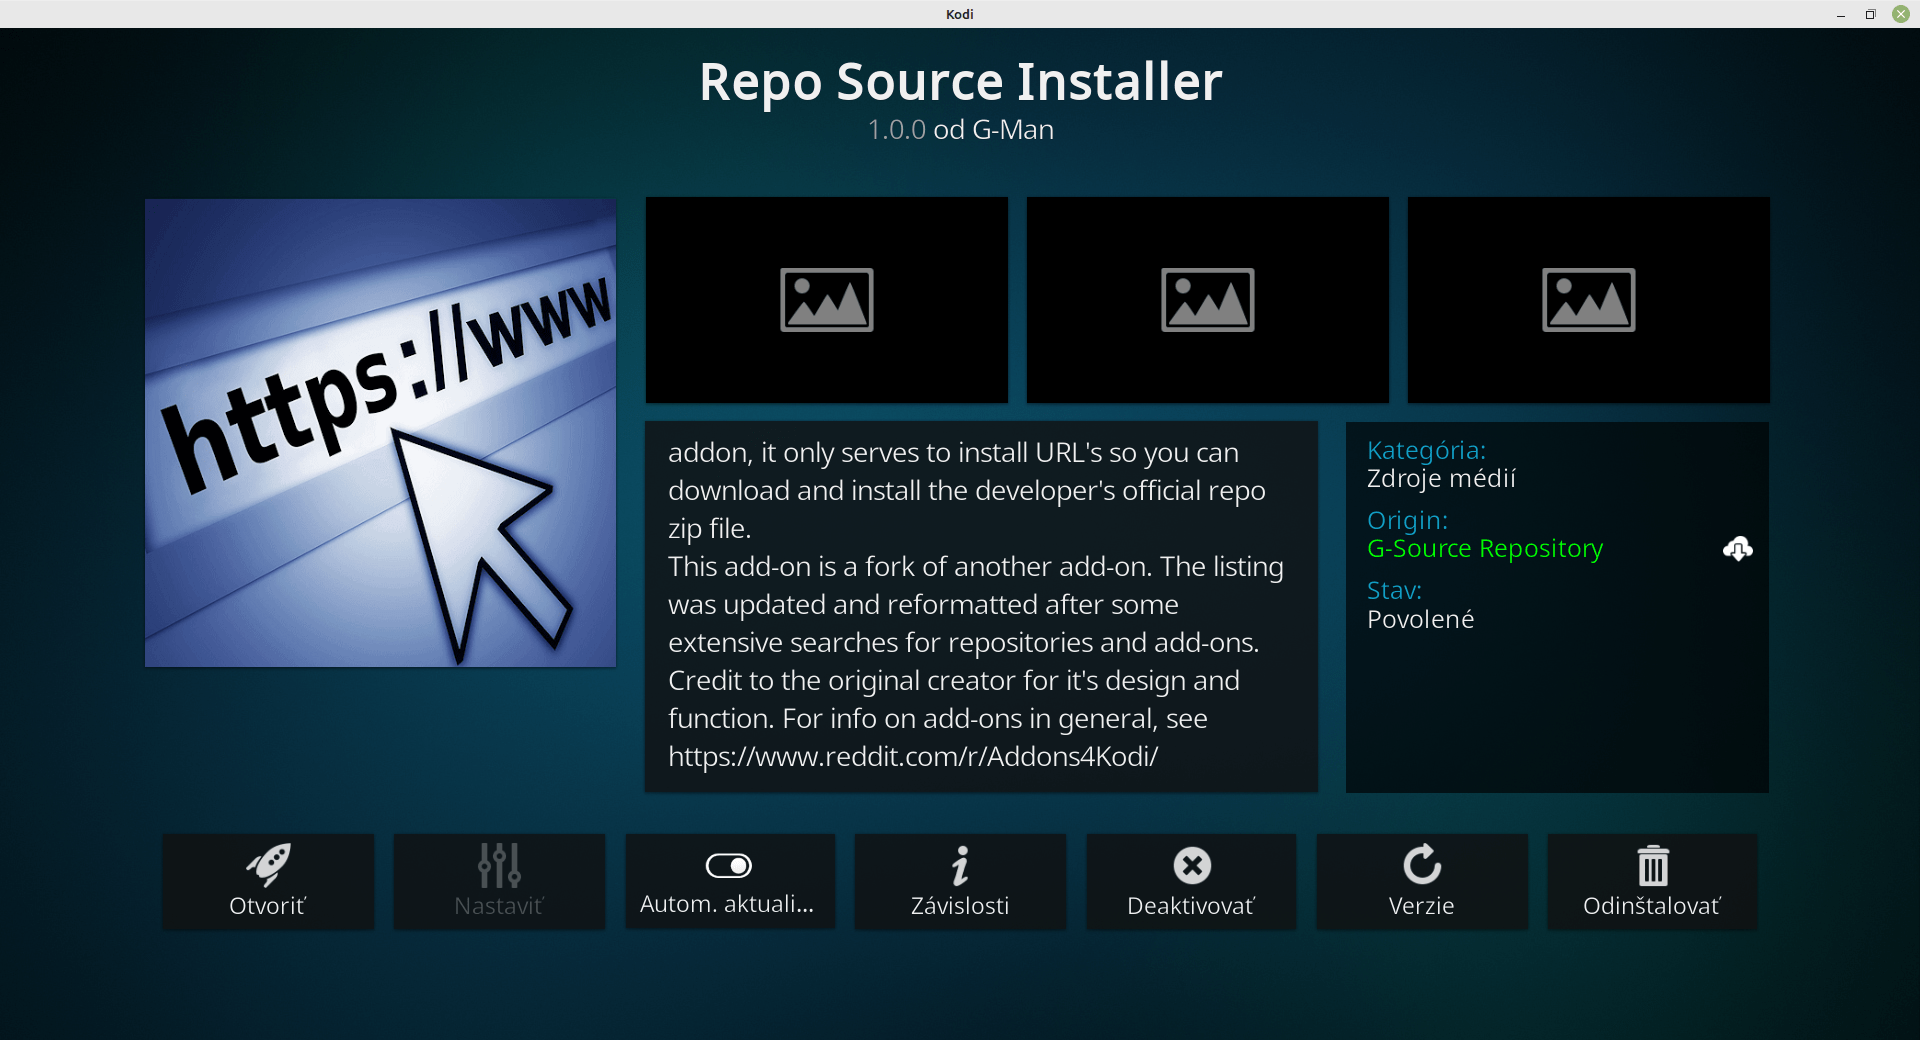 Repo Source Installer